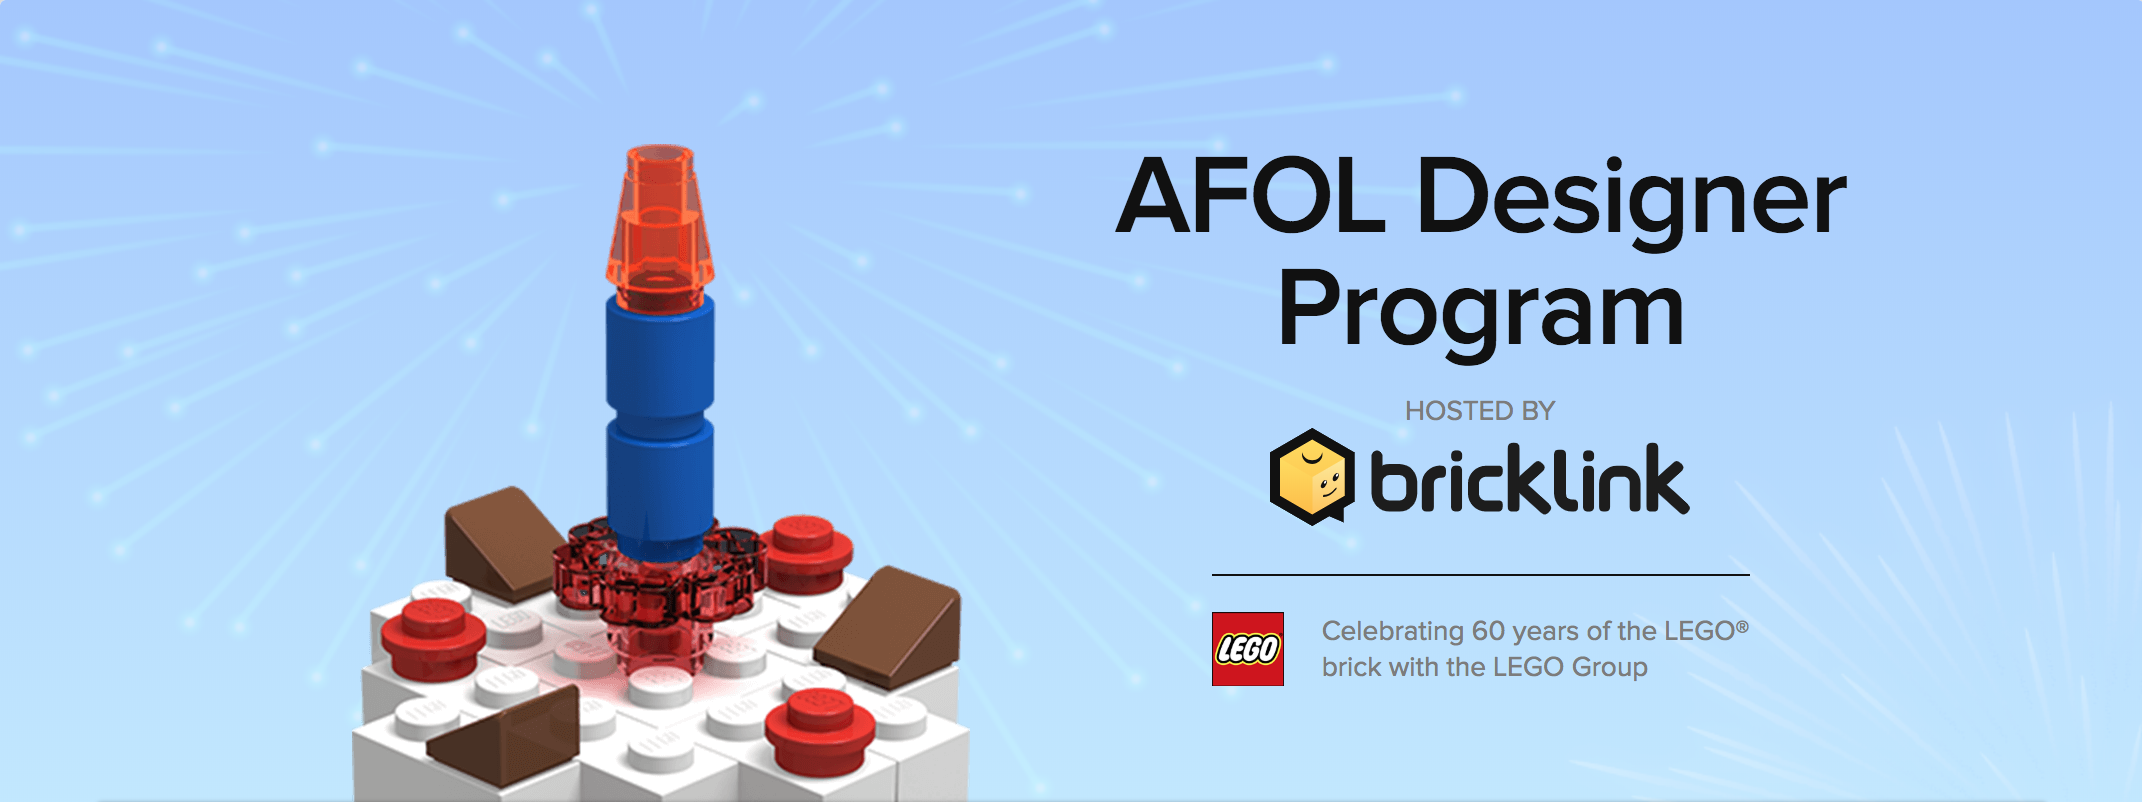 Svelati i dettagli ufficiali della collaborazione fra LEGO e Bricklink